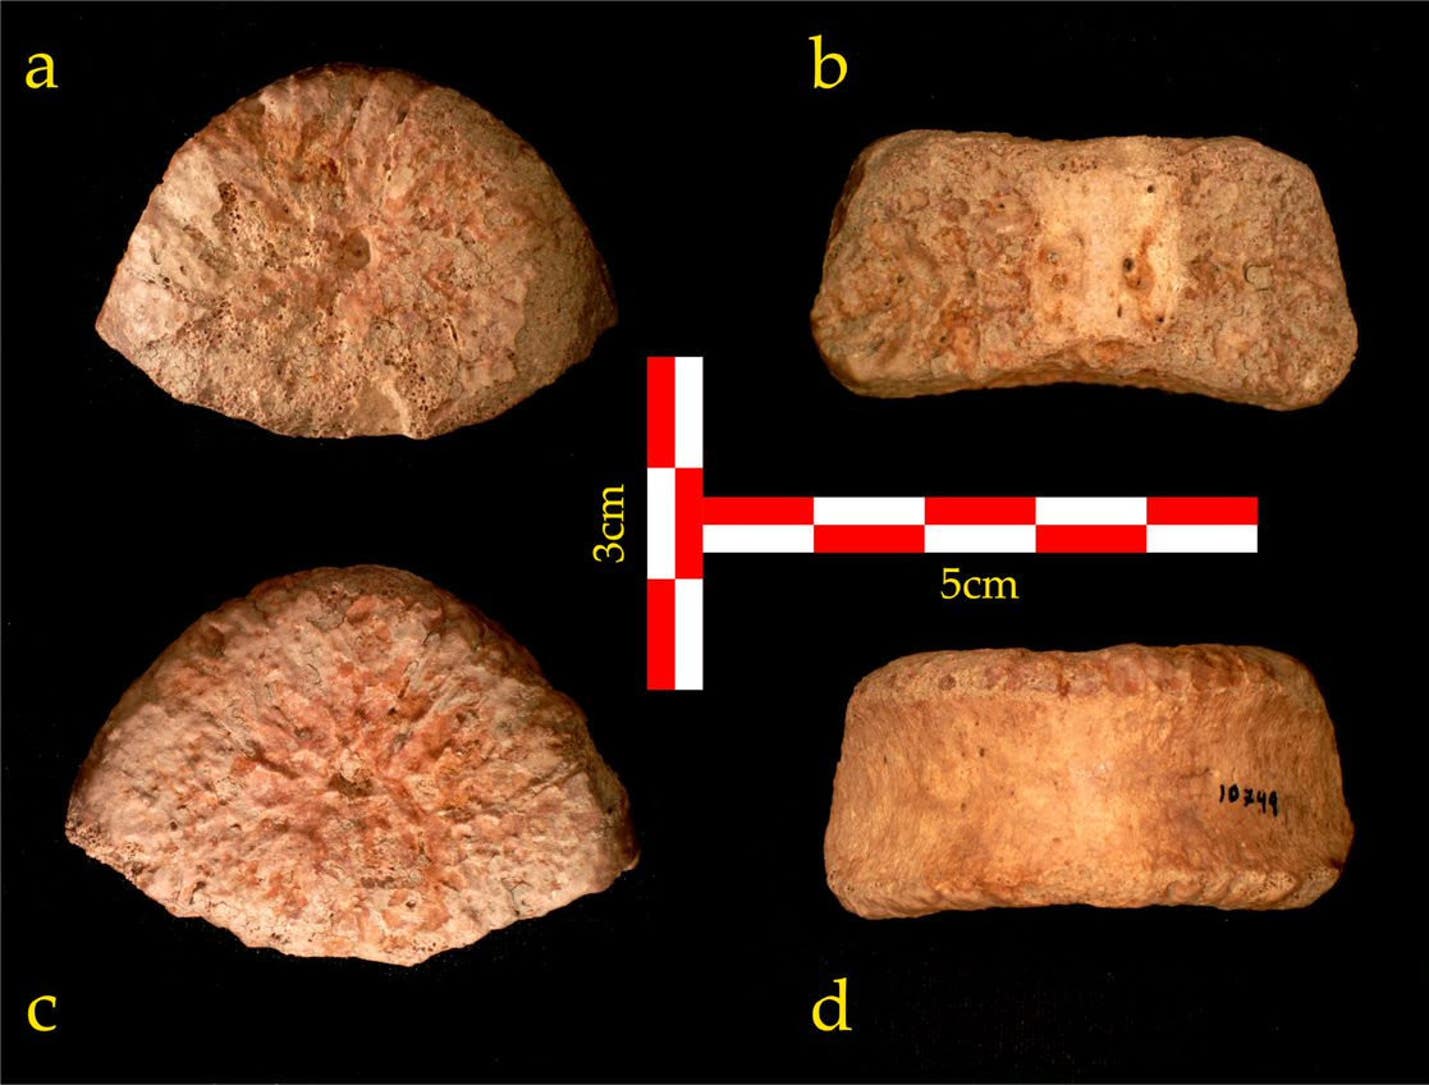 以色列研究人员鉴定出在约旦河谷发掘的一块化石属于150万年前古人类儿童